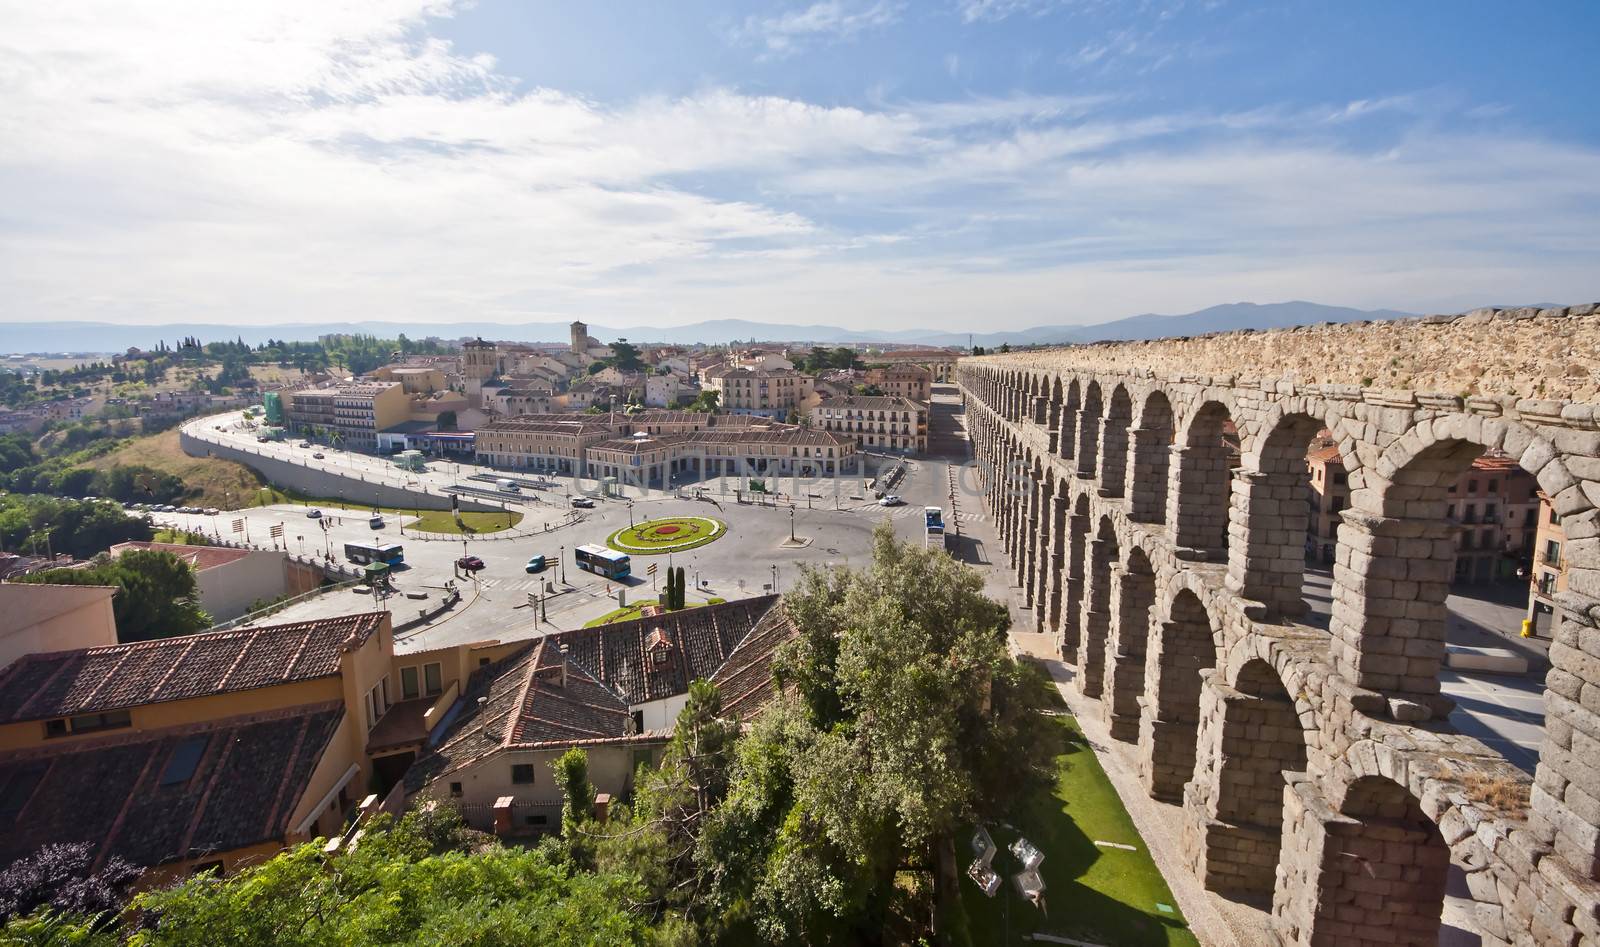 Aqueduct of Segovia by sssanchez